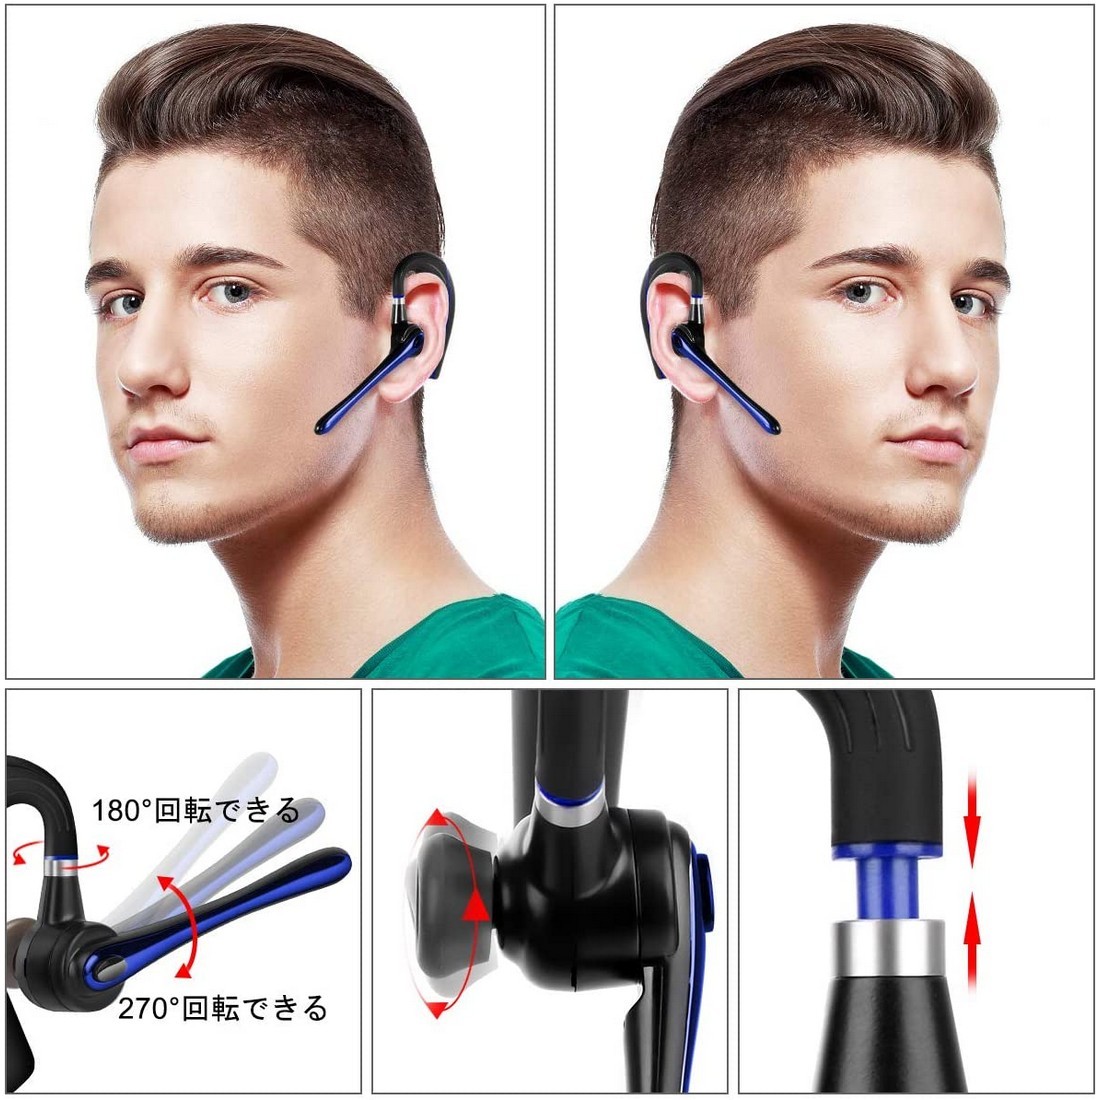 Bluetooth ヘッドセット5.0 ブルー 高音質片耳 内蔵マイク Bluetoothイヤホン ビジネス ハンズフリー 日本技適マーク取得 sl652_画像4